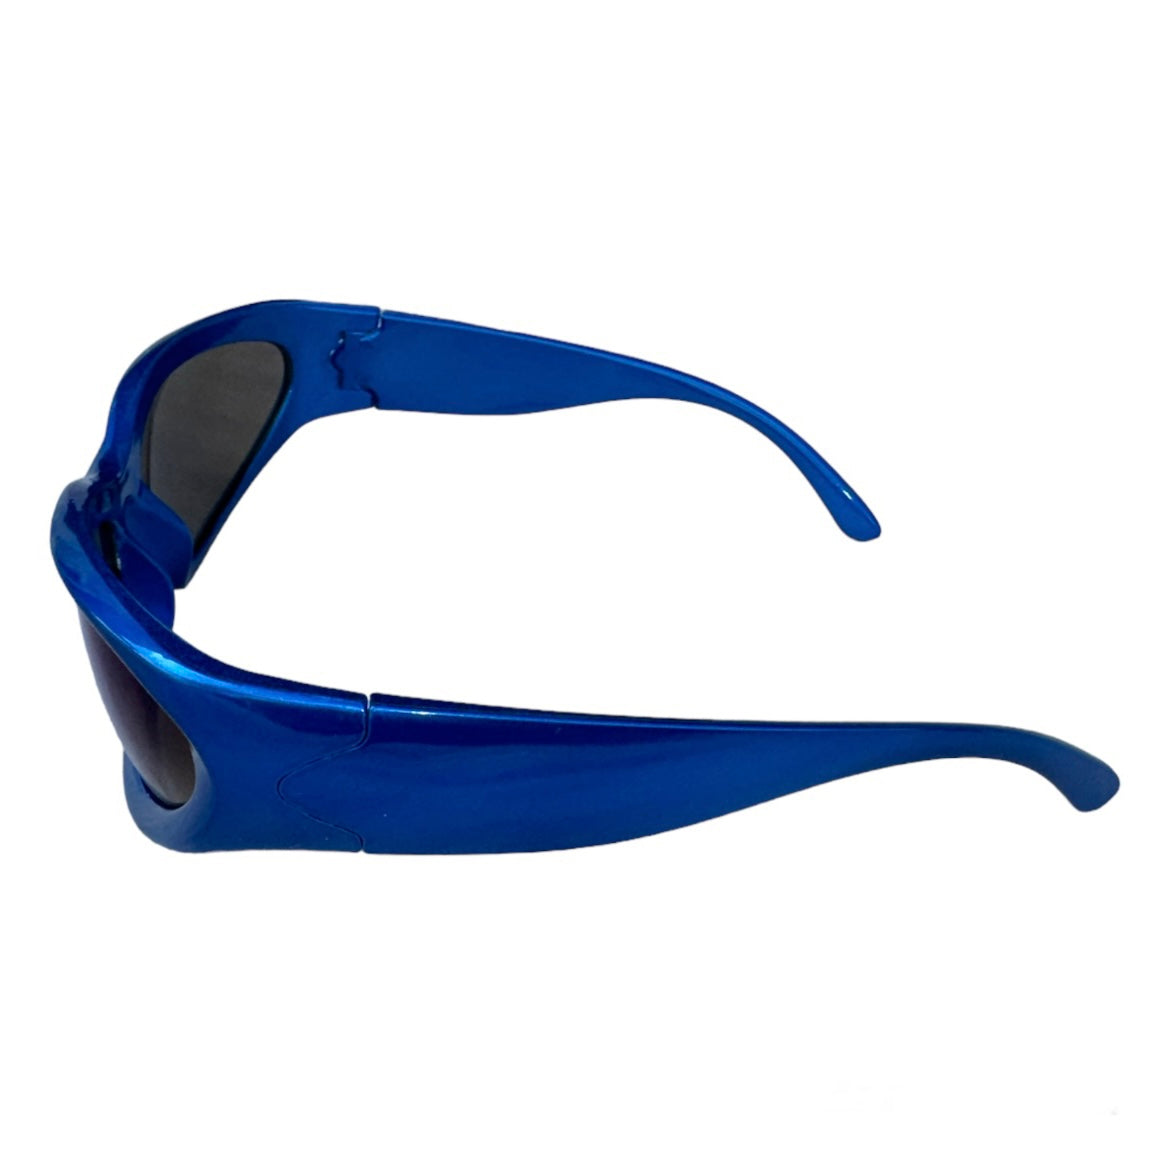 Retro 90’s Sport Sunglasses in Blue